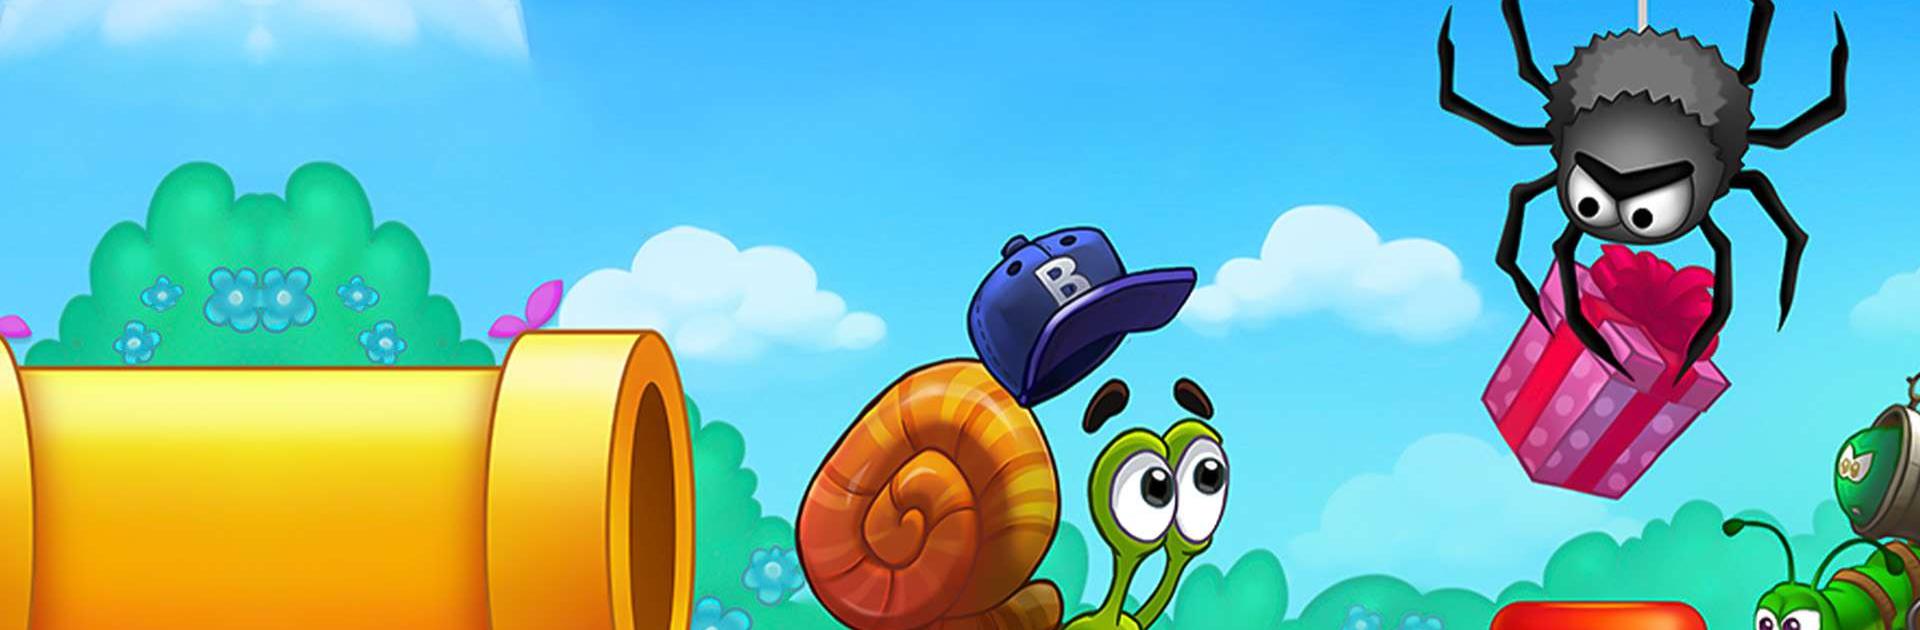 Snail Bob 1: Adventure Puzzle